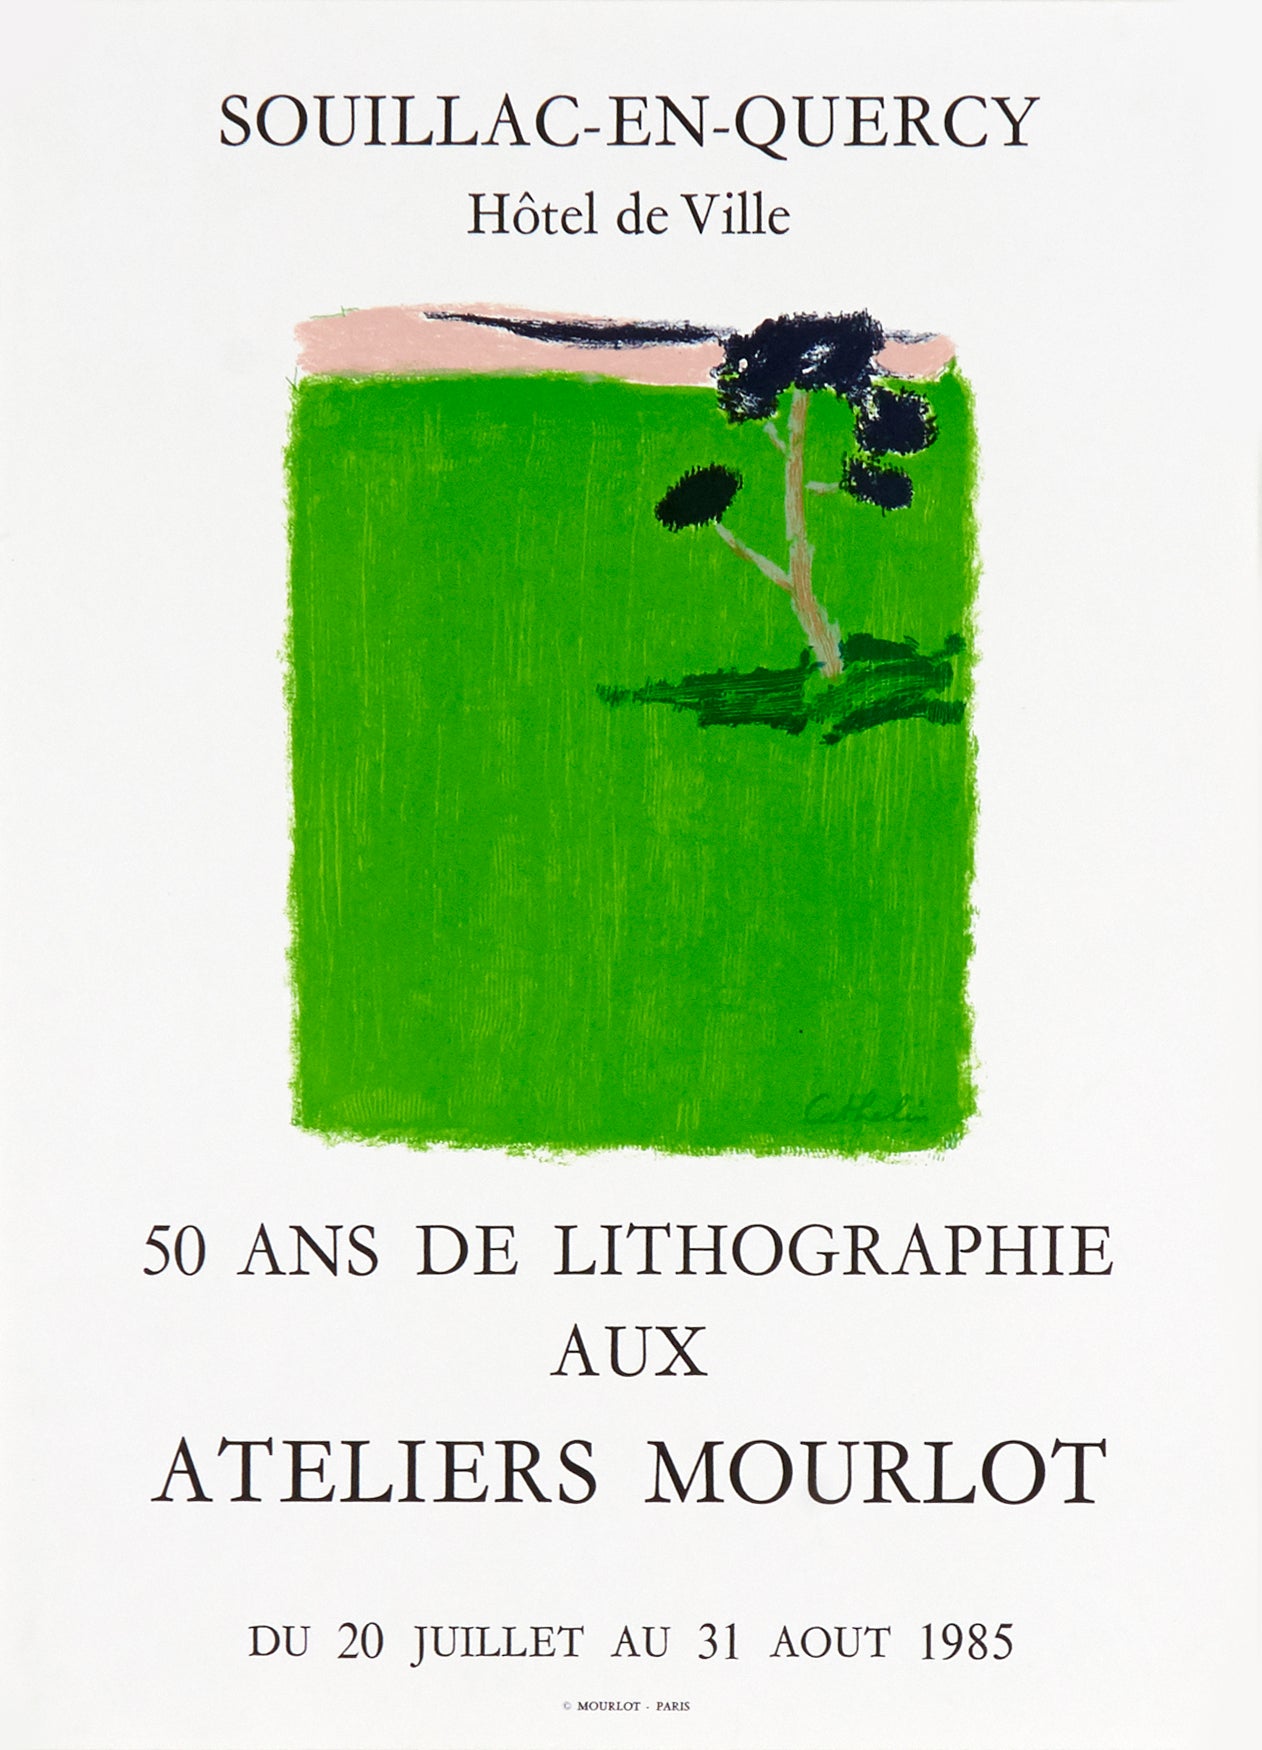 50 ans de Lithographie aux Ateliers Mourlot by Bernard Cathelin, 1985 - Mourlot Editions - Fine_Art - Poster - Lithograph - Wall Art - Vintage - Prints - Original